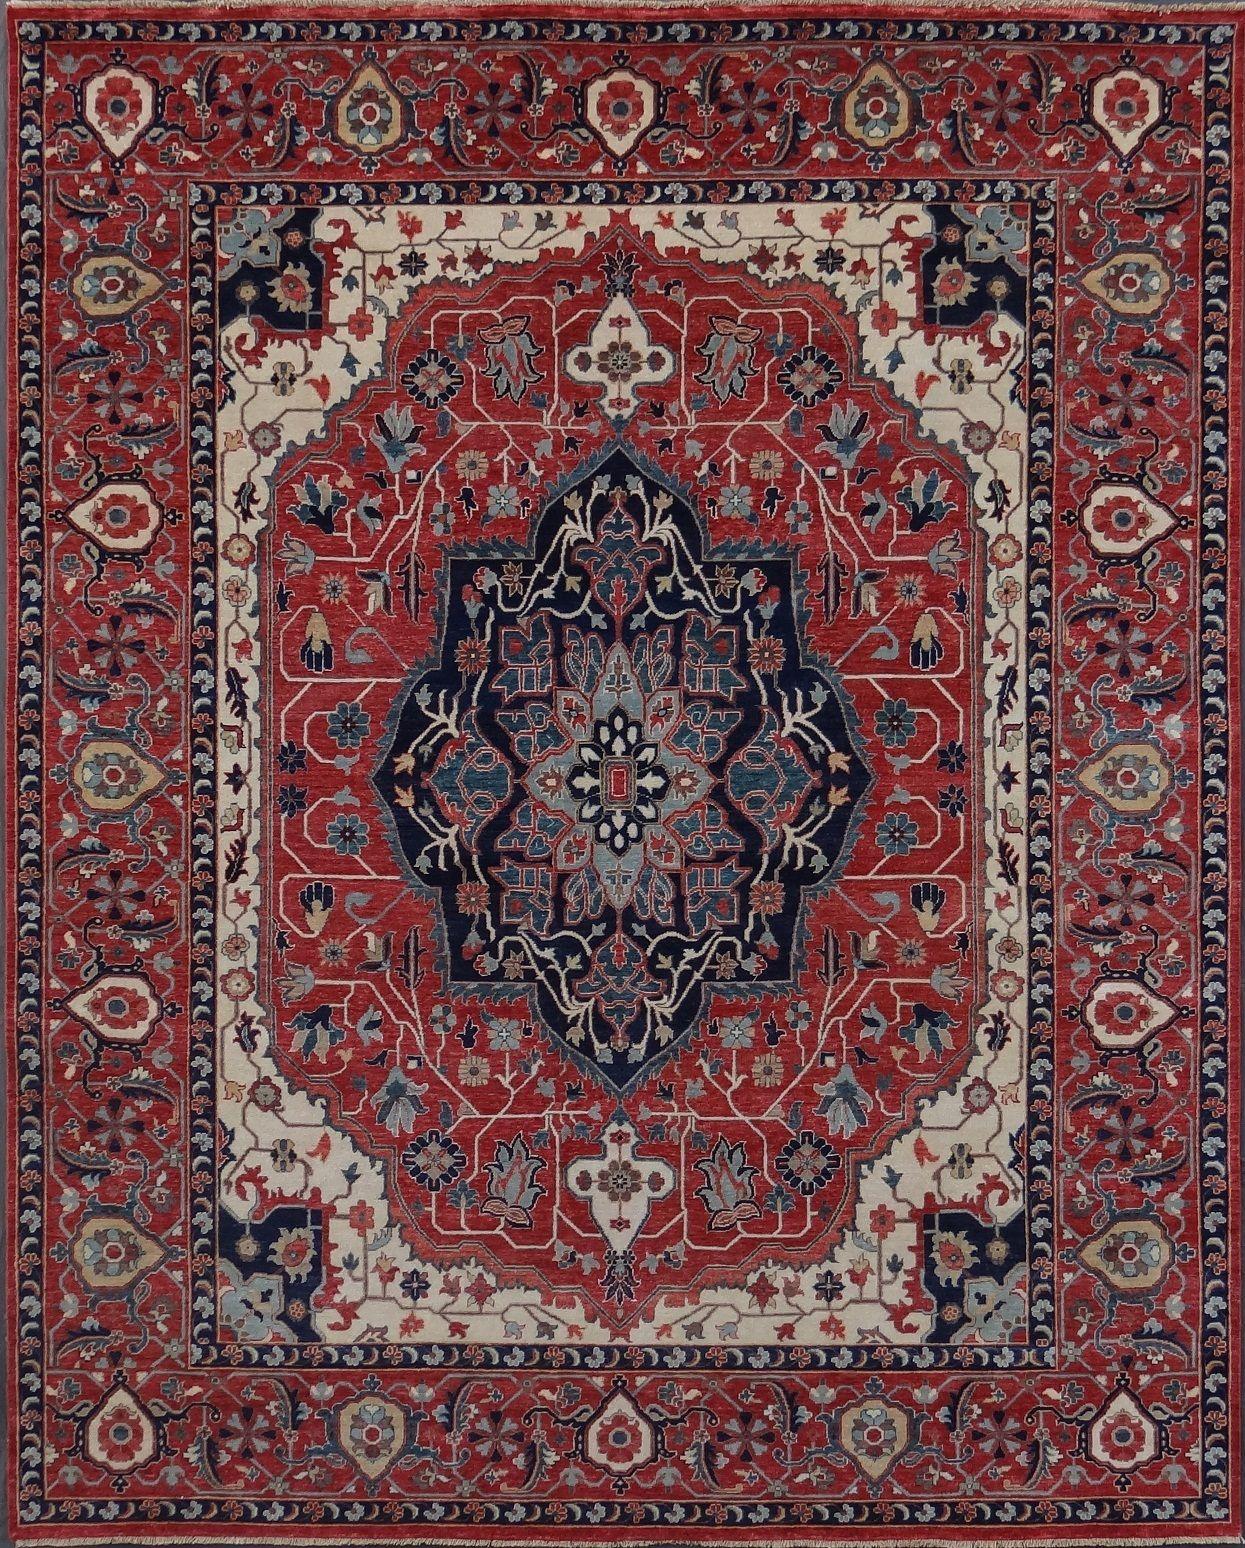 Joli tapis neuf avec un beau design persan et de belles couleurs, entièrement noué à la main avec du velours de laine sur une base de coton.